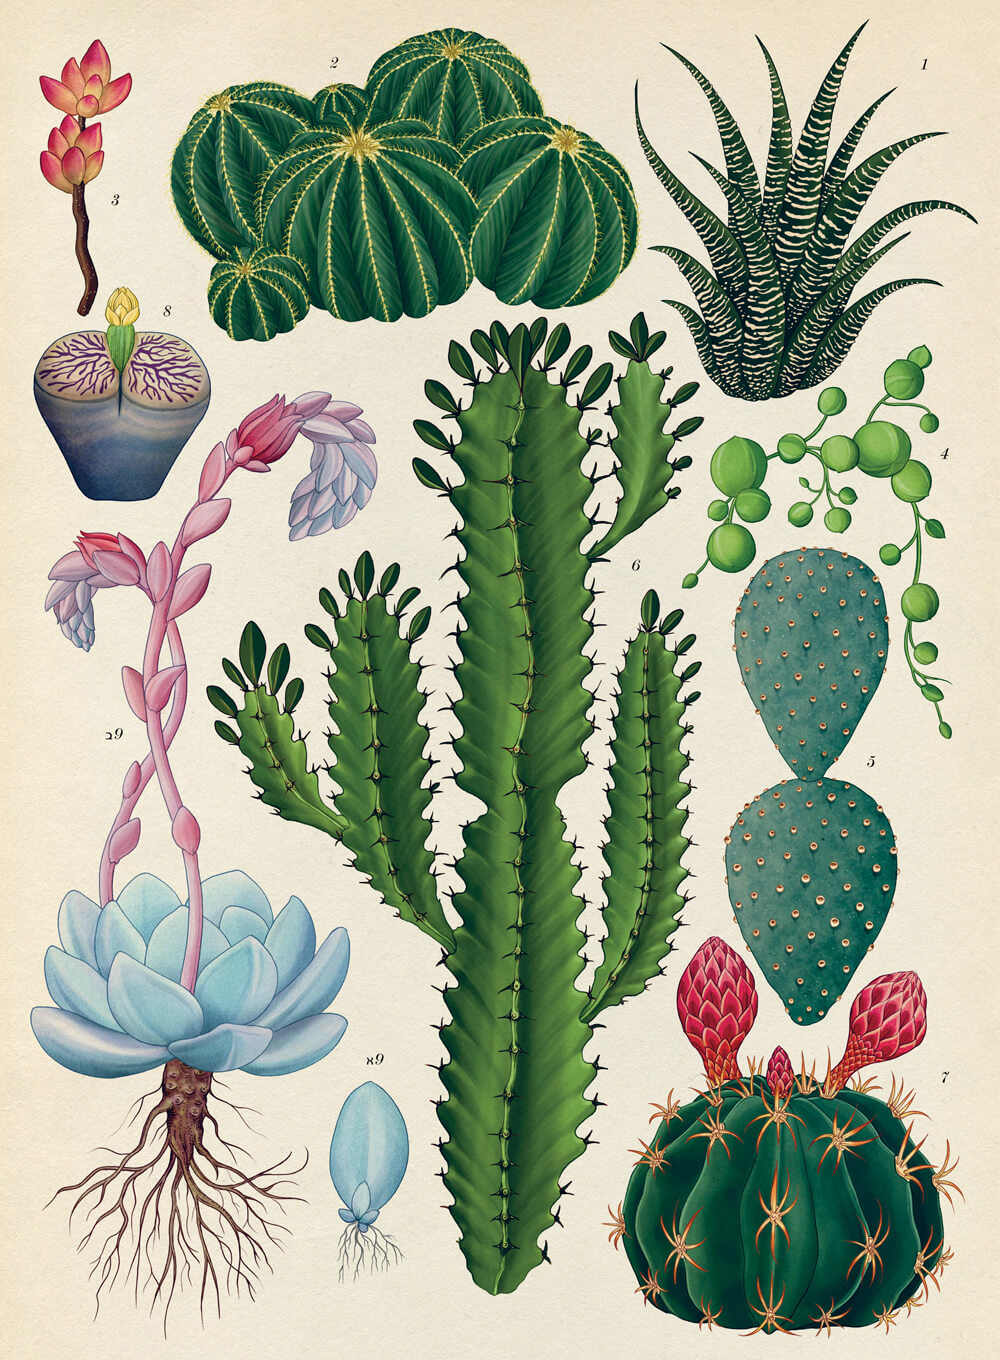 מגזין מקו ועד תרבות / מיזם דיגיטלי ללא צרכי רווח Botanicum</br>Katie Scott & Kathy Willis</br></br>"מוזיאון הצמחים" – ספר אמנות מרגש 